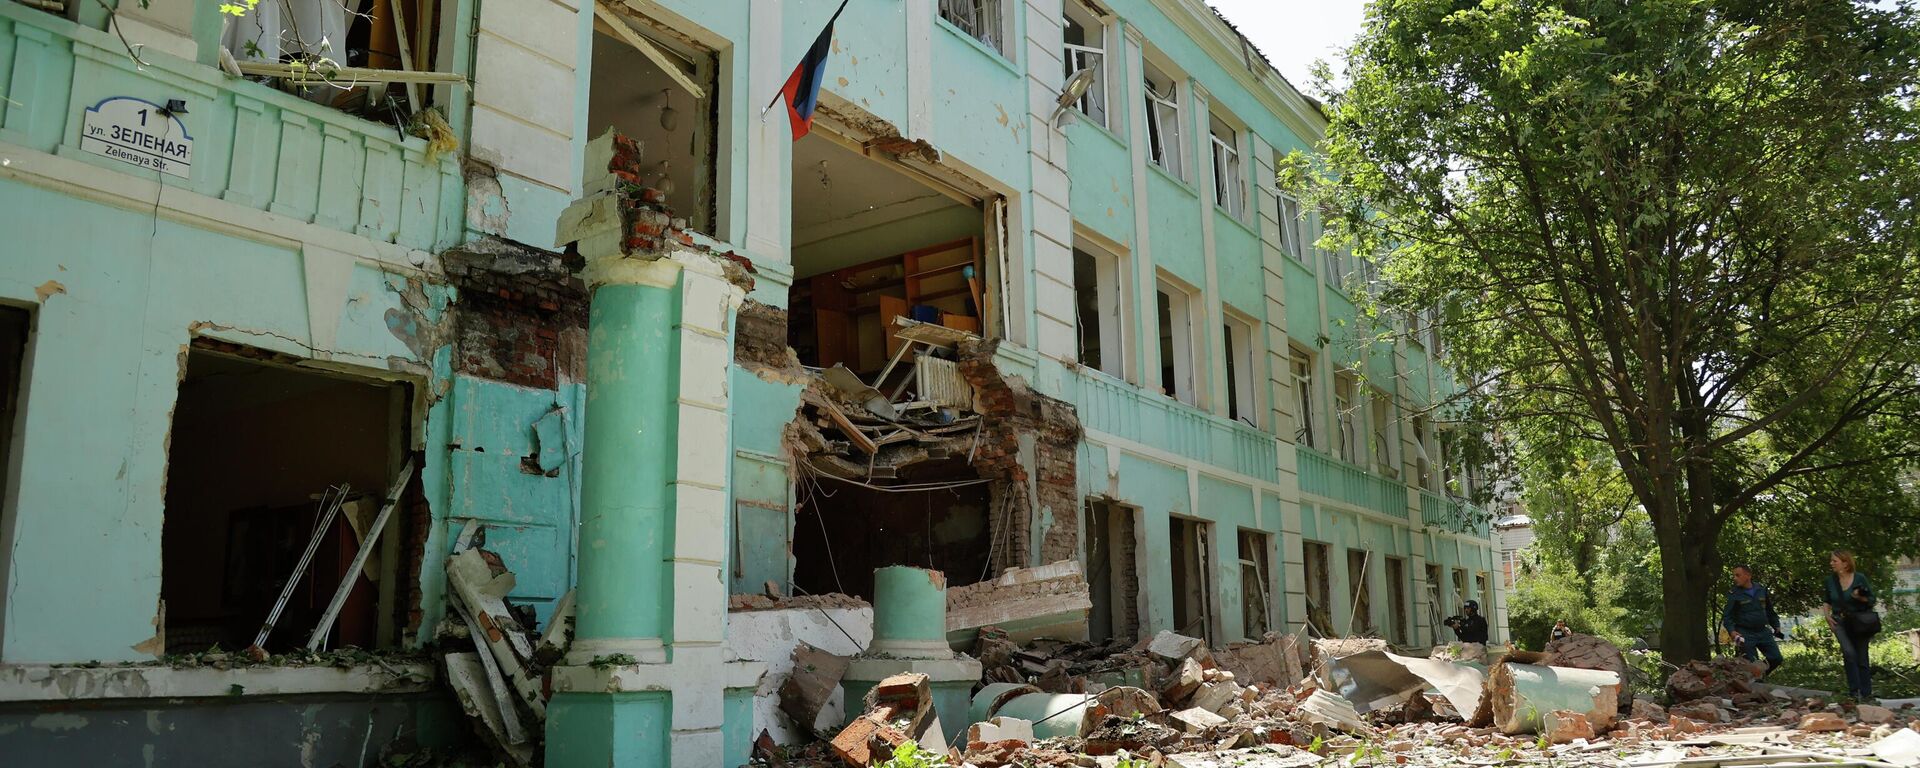 Escola Nº 22 destruída em Donetsk por ataques de lançadores múltiplos de foguetes Smerch ucranianos, foto publicada em 30 de maio de 2022 - Sputnik Brasil, 1920, 30.05.2022